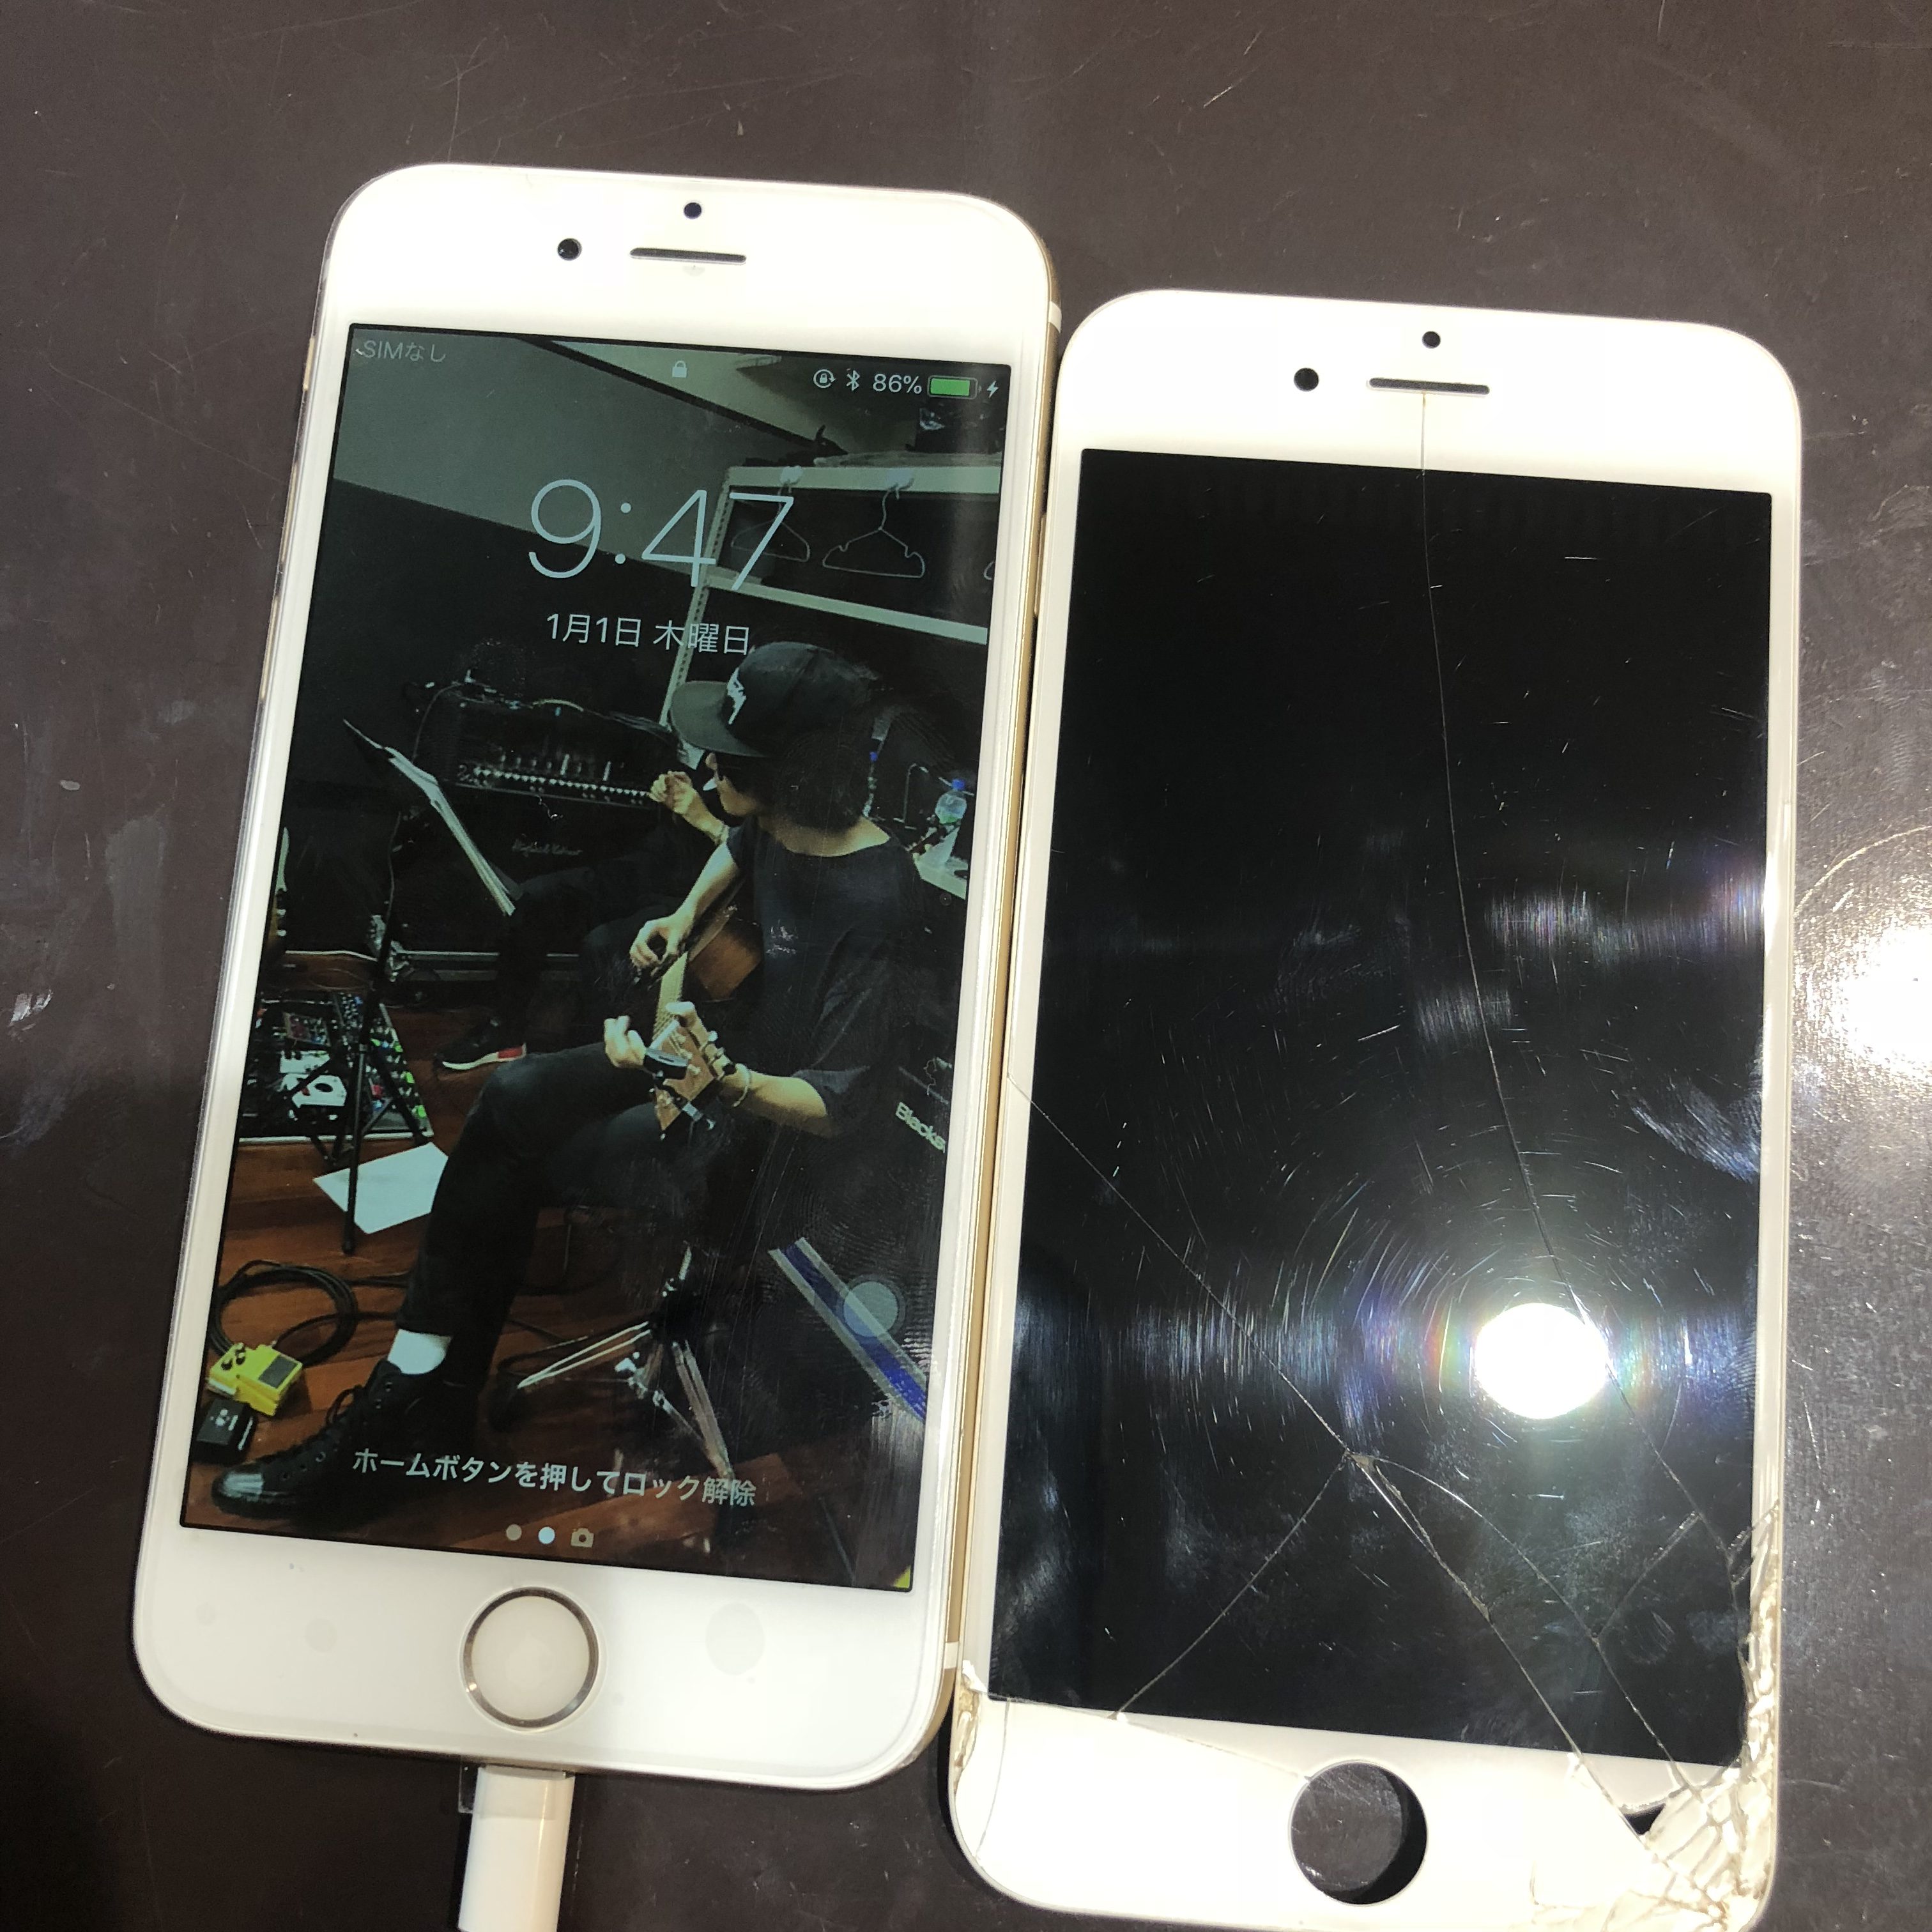 iphone6 <尼崎市からのお客様>画面割れているうえにバッテリーが…スマートクールつかしん店ならデータそのまま即日修理いたします！